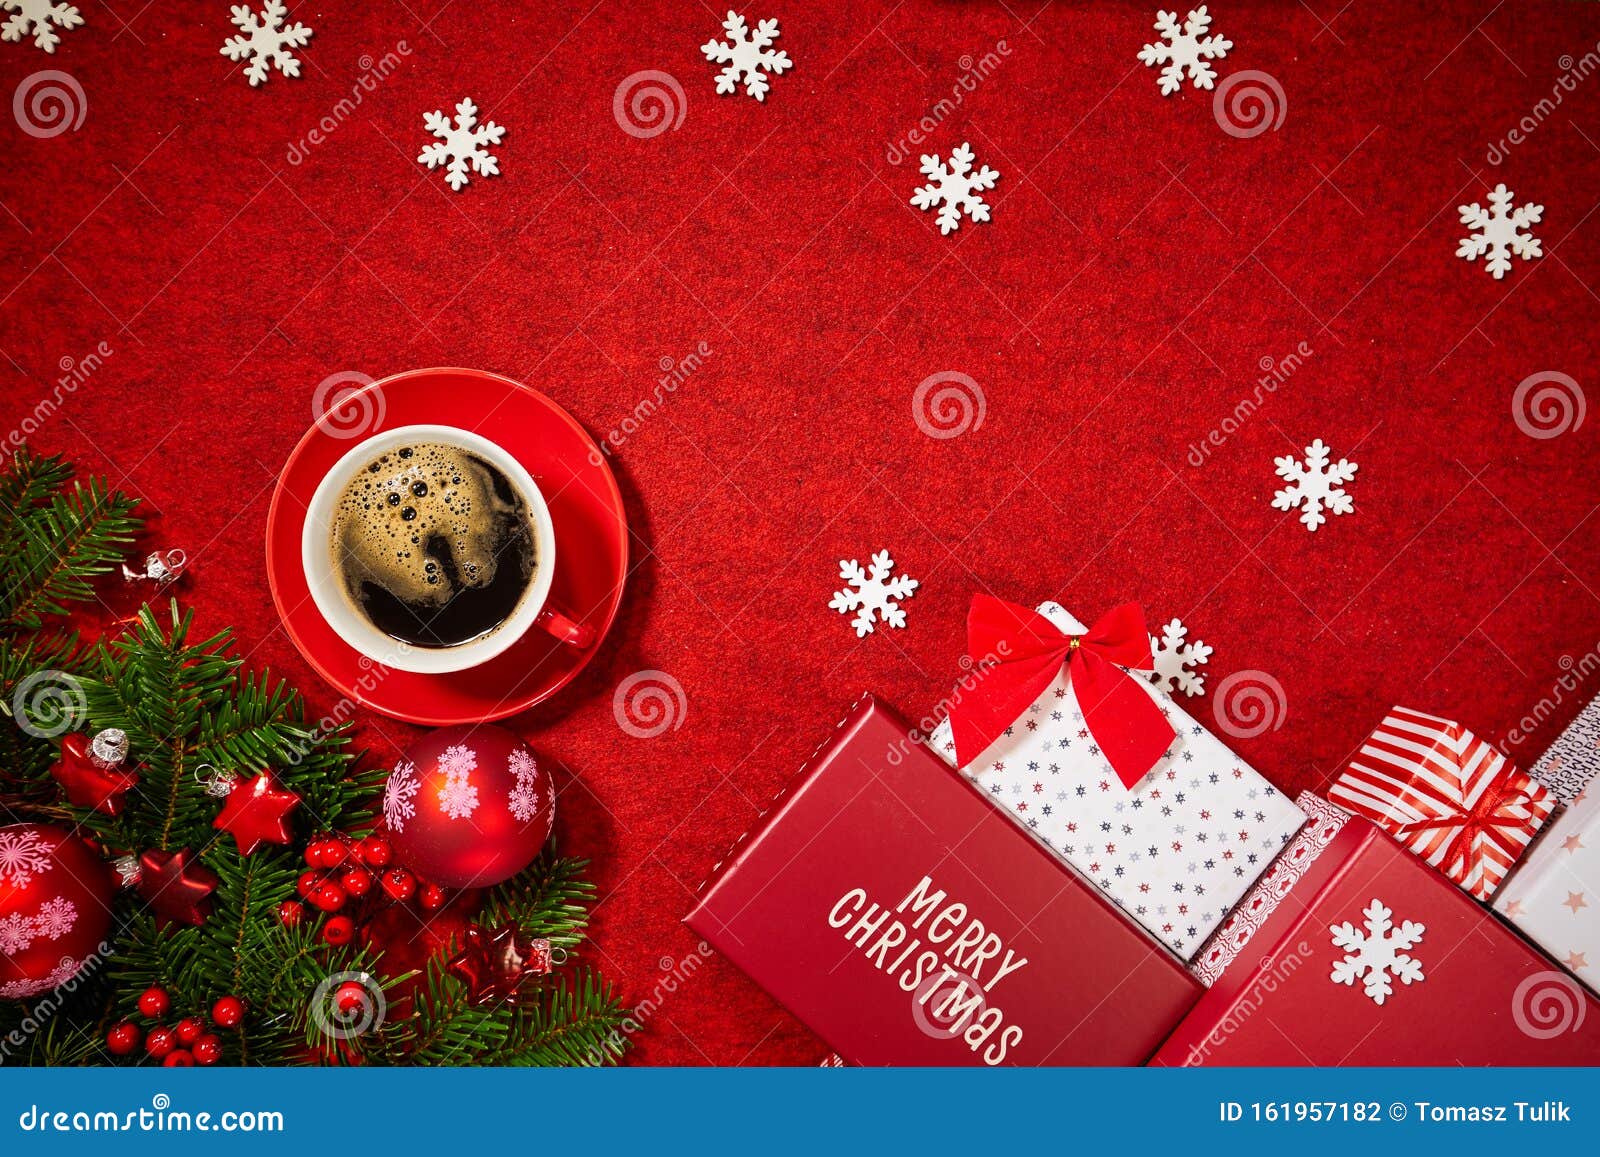 Stock Regali Di Natale.La Decorazione Dei Regali Di Natale Su Sfondo Rosso Fotografia Stock Immagine Di Decorazioni Background 161957182